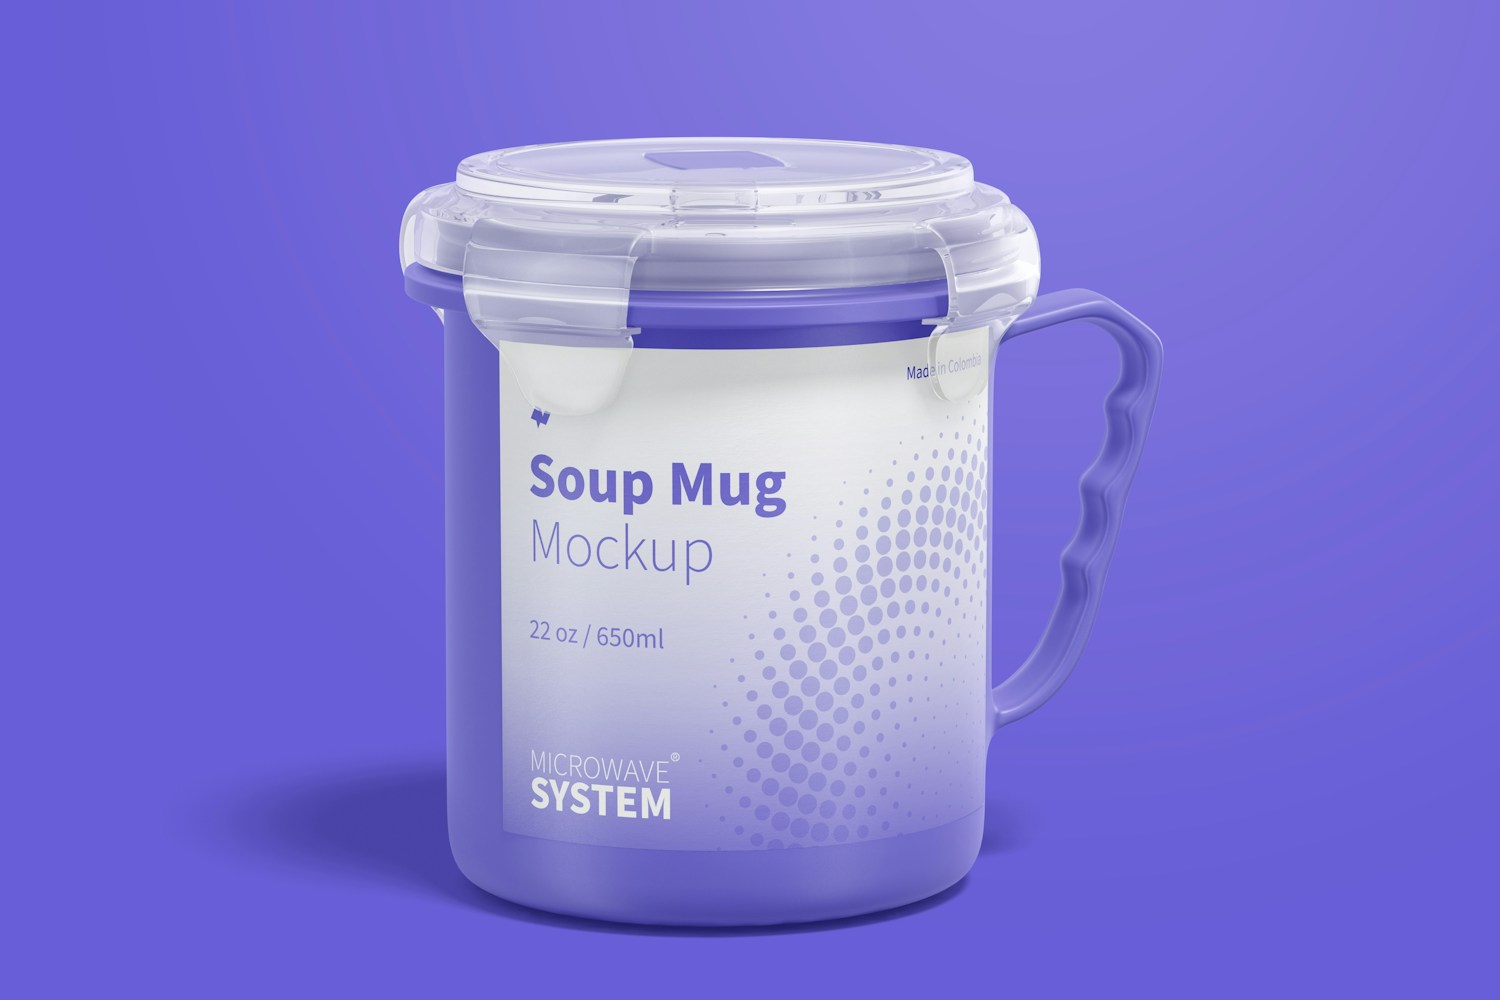 22 oz Soup Mug Mockup